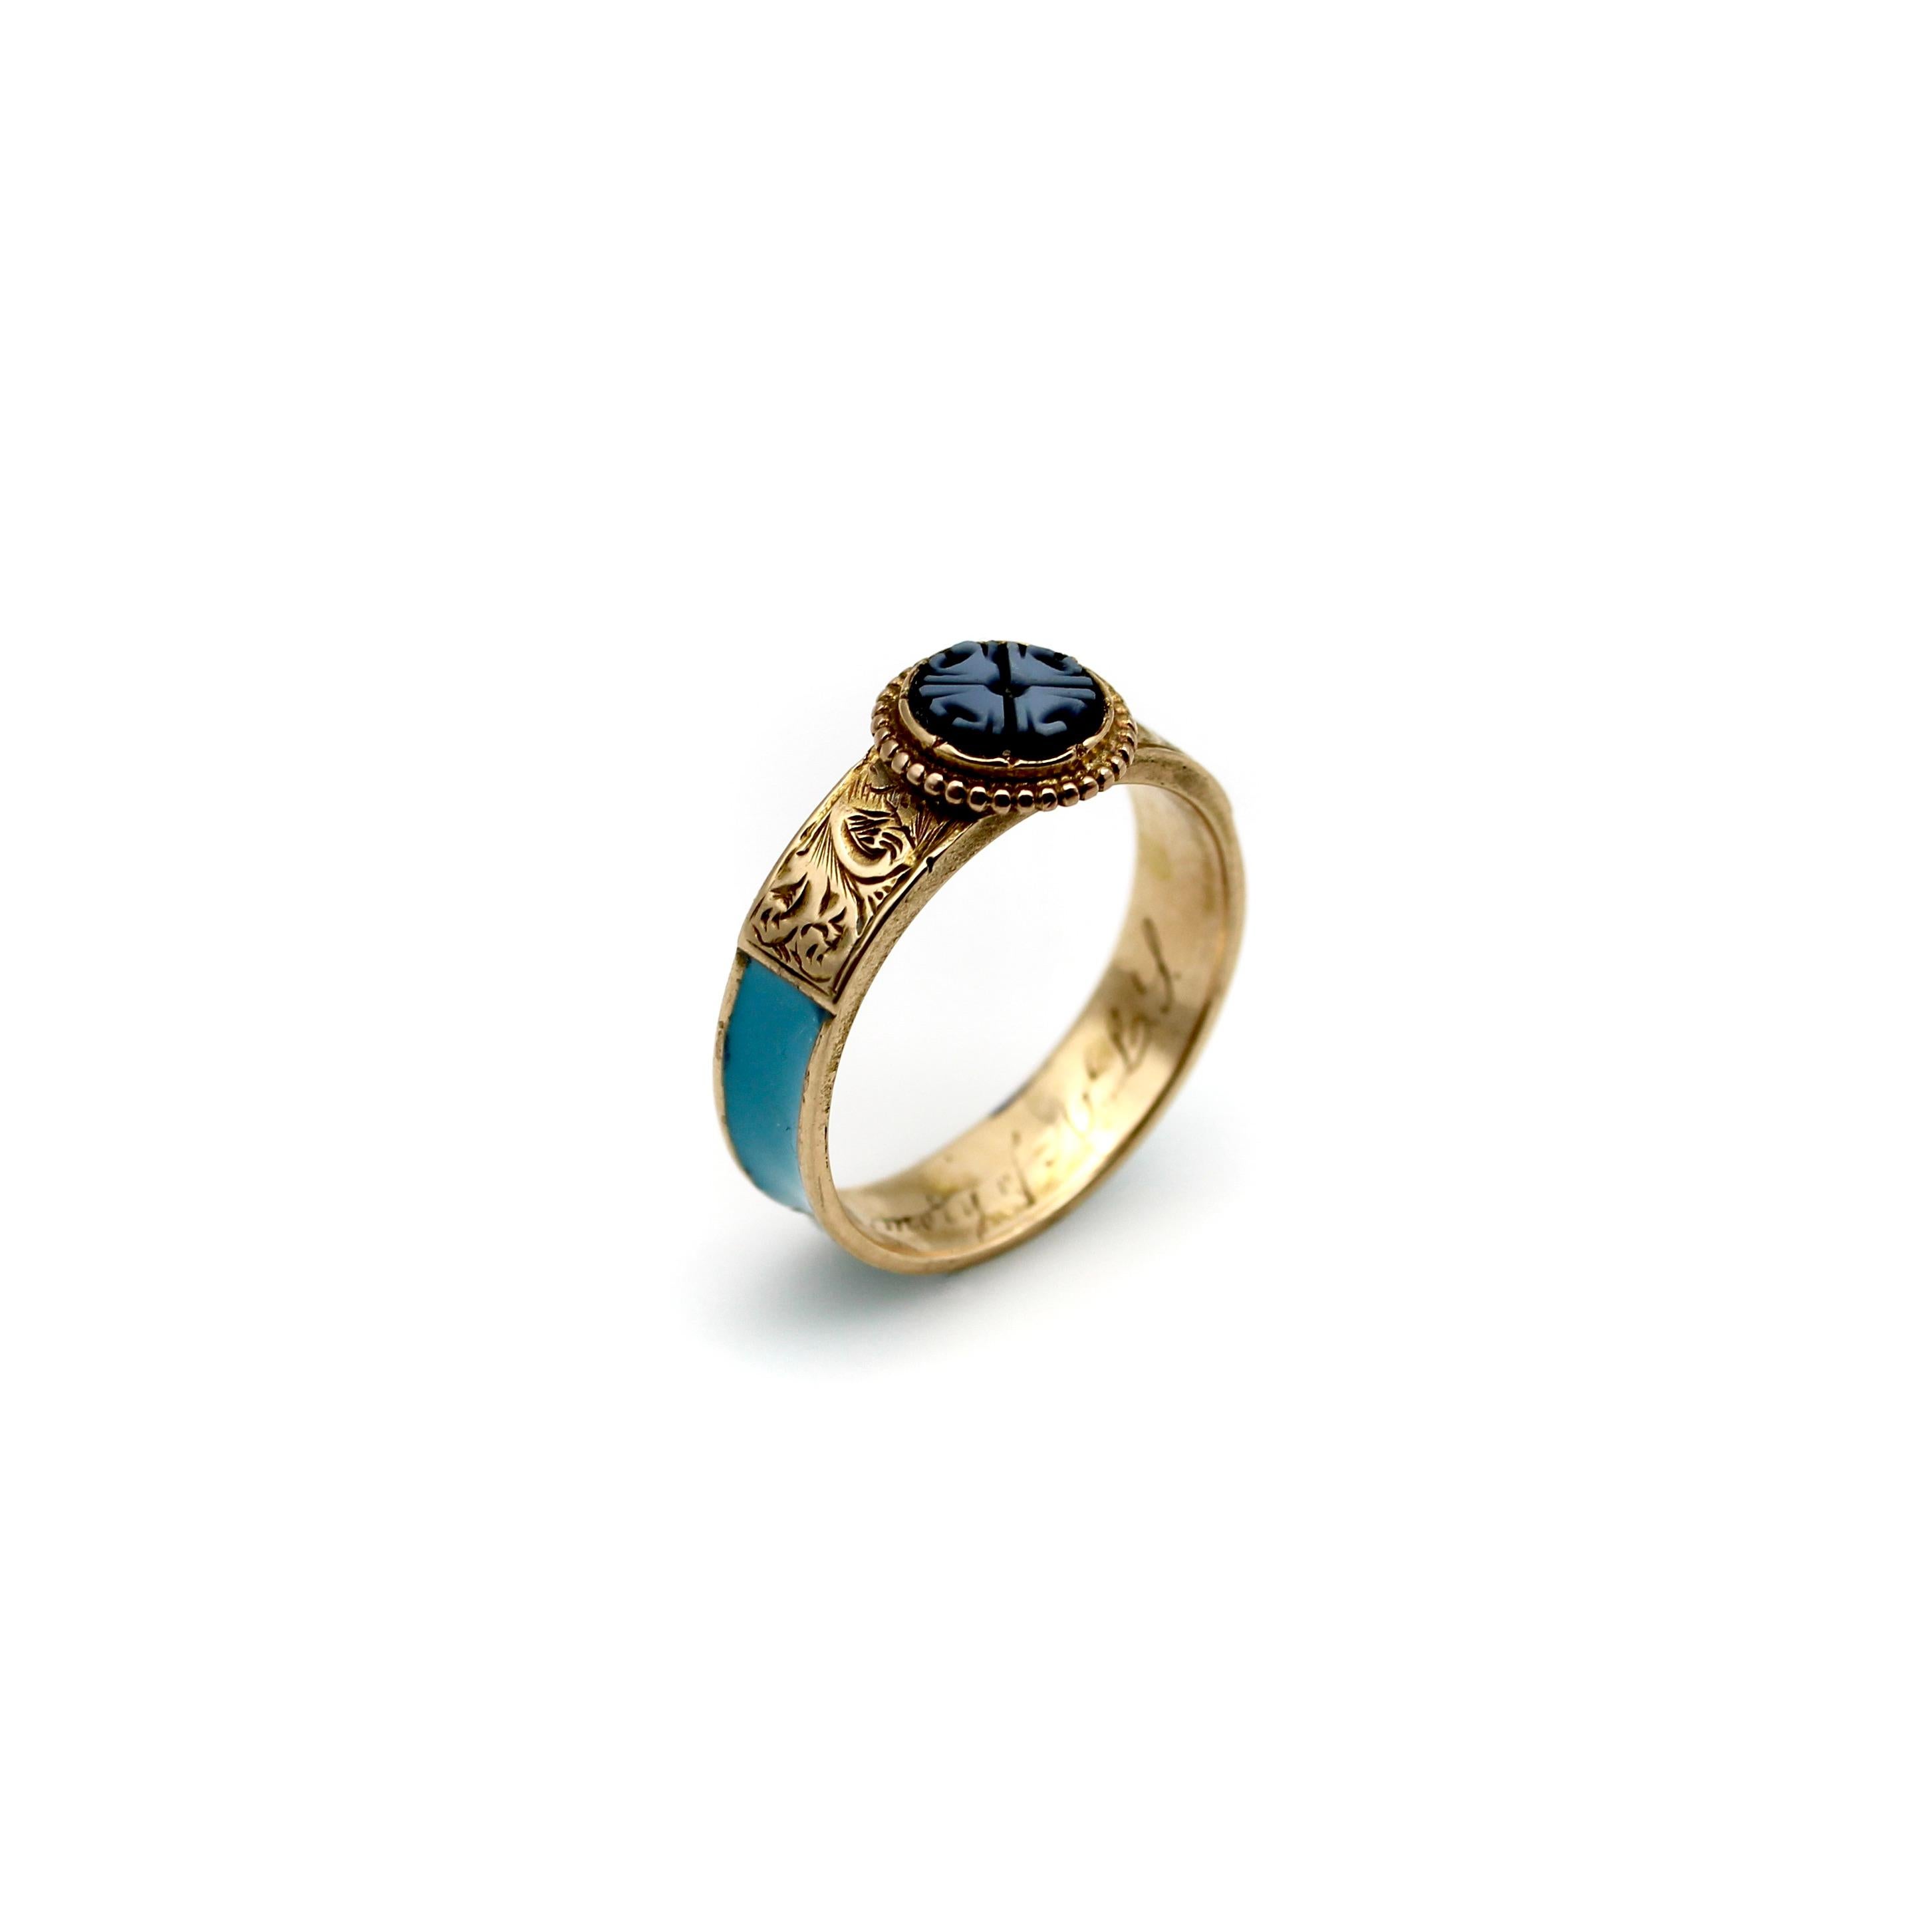 Dieser zarte und liebevolle Ring aus 14-karätigem Gold vereint einige der verlockendsten Eigenschaften des viktorianischen Trauerschmucks. In der Mitte befindet sich eine gebänderte Achatscheibe, die mit einem vierblättrigen Muster verziert ist. Der